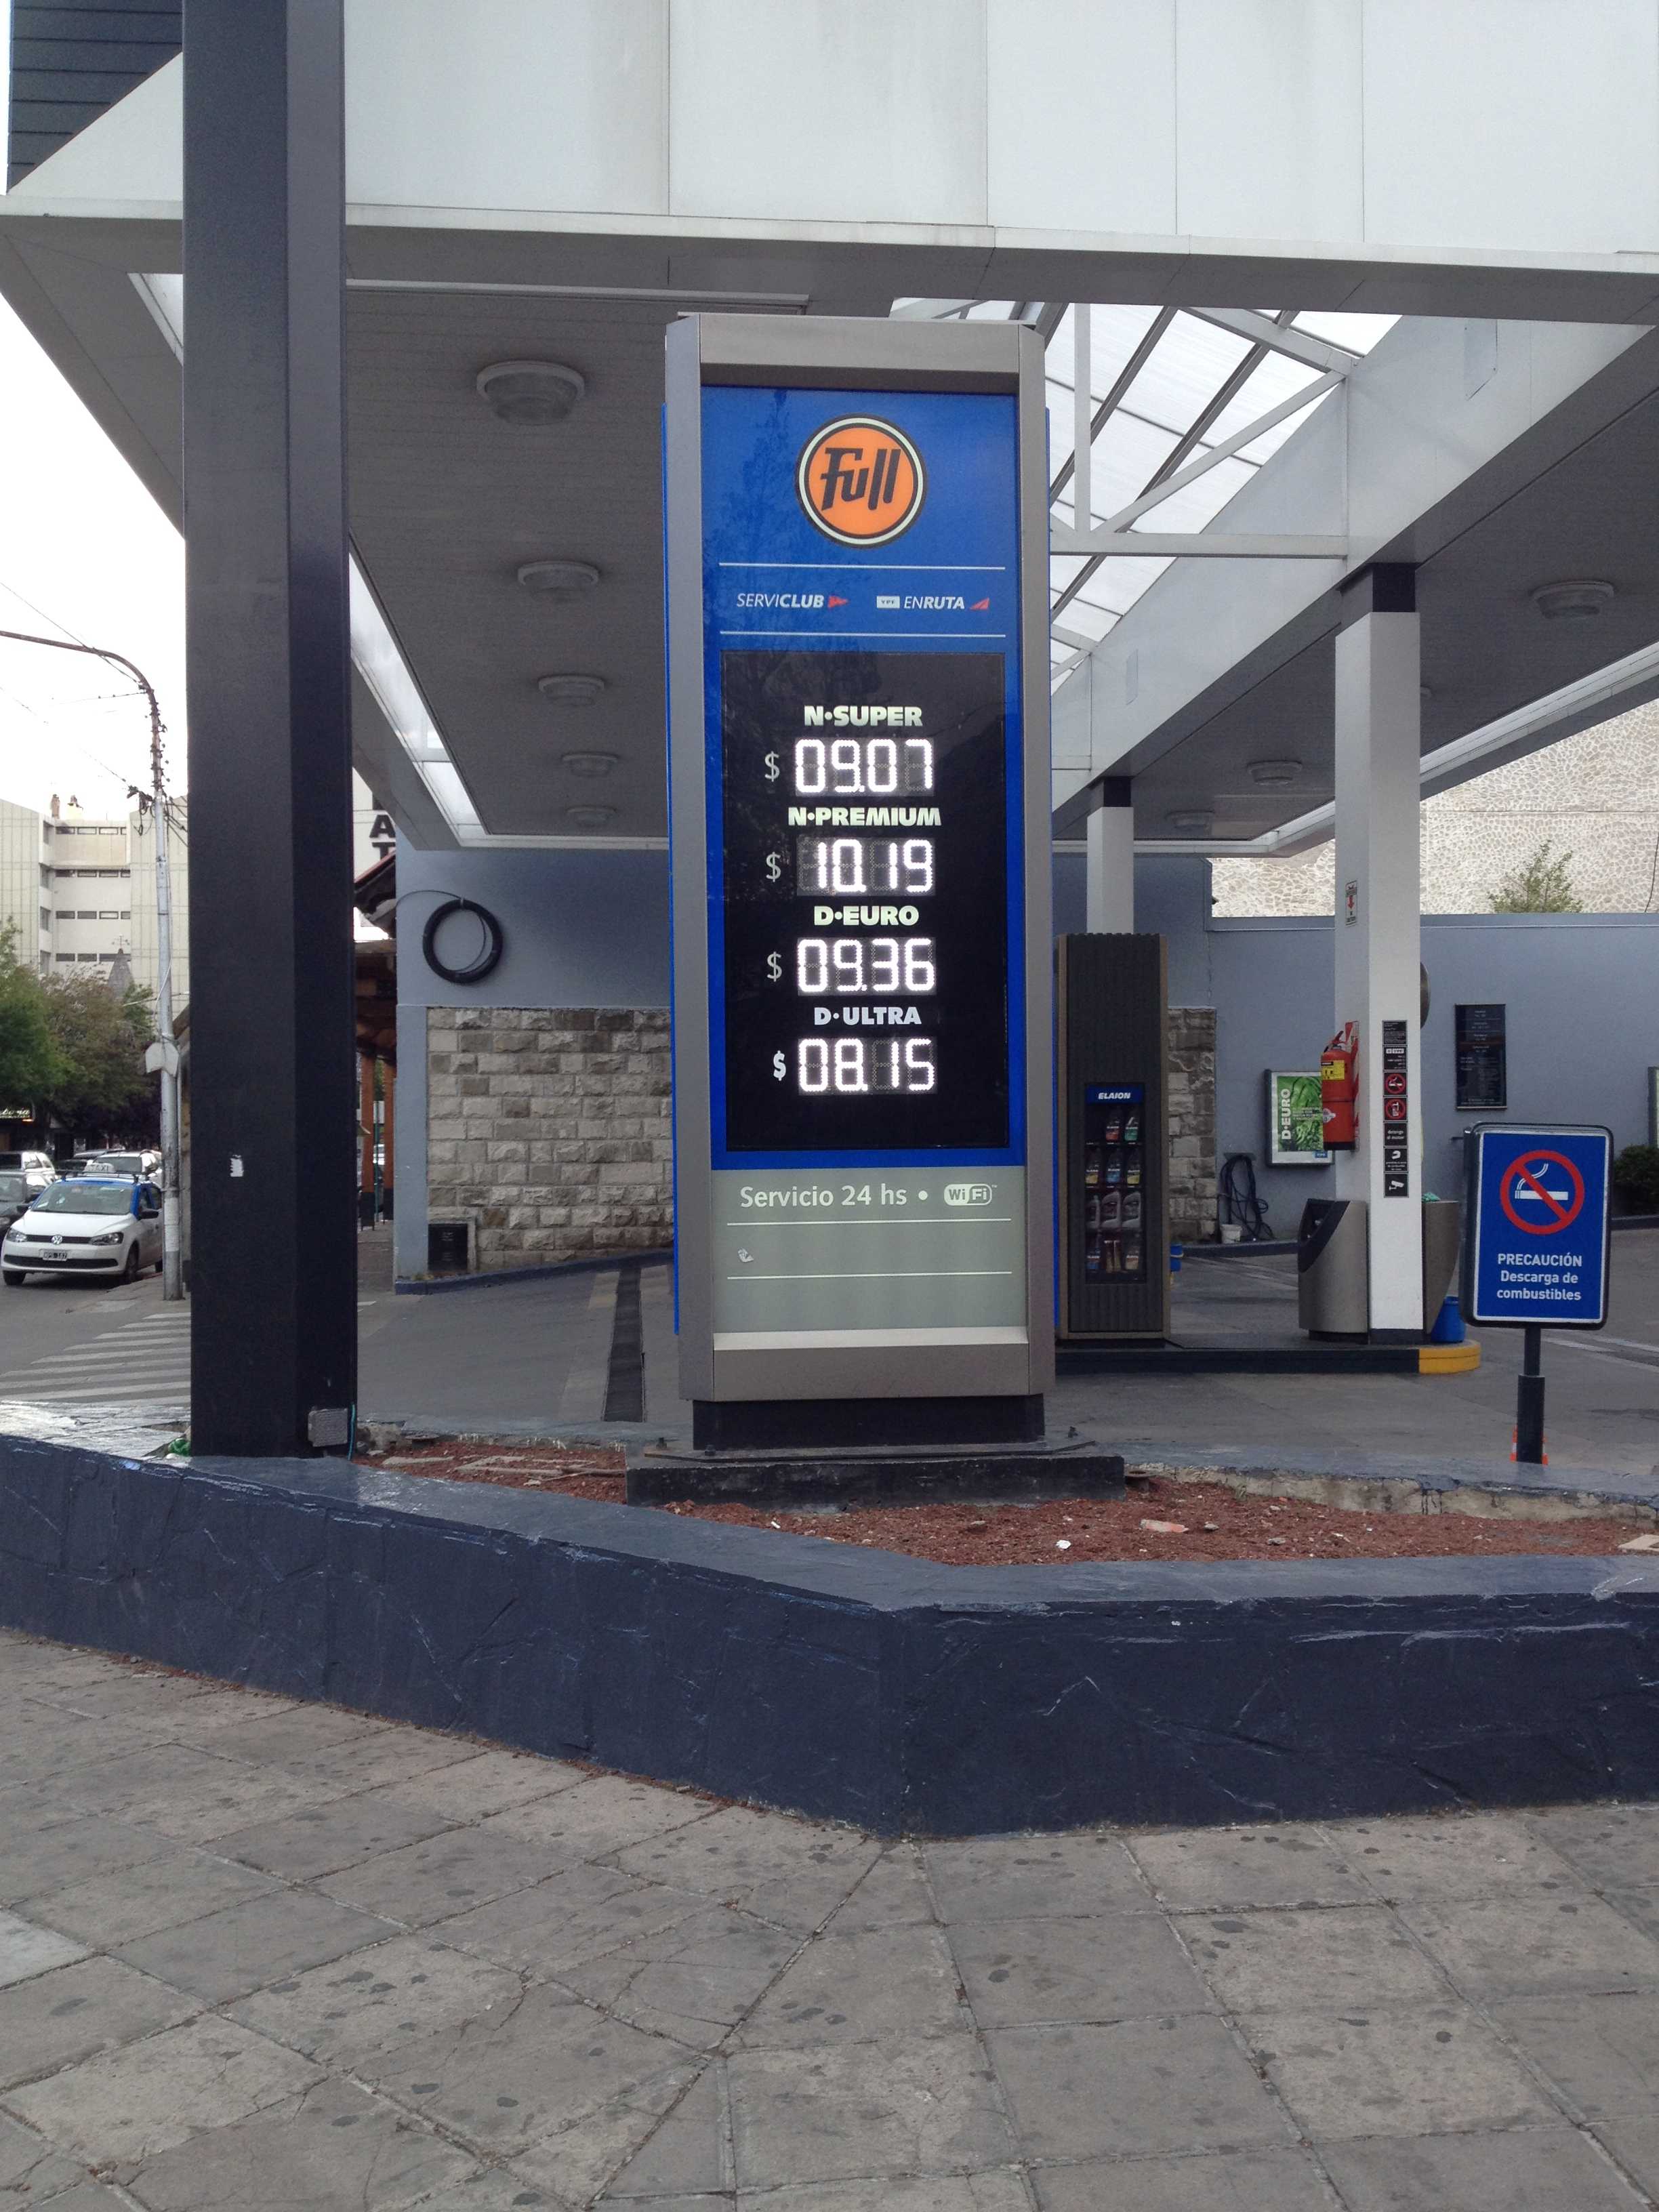 Preço da gasolina em Bariloche  9,07 pesos = 2,70 reais